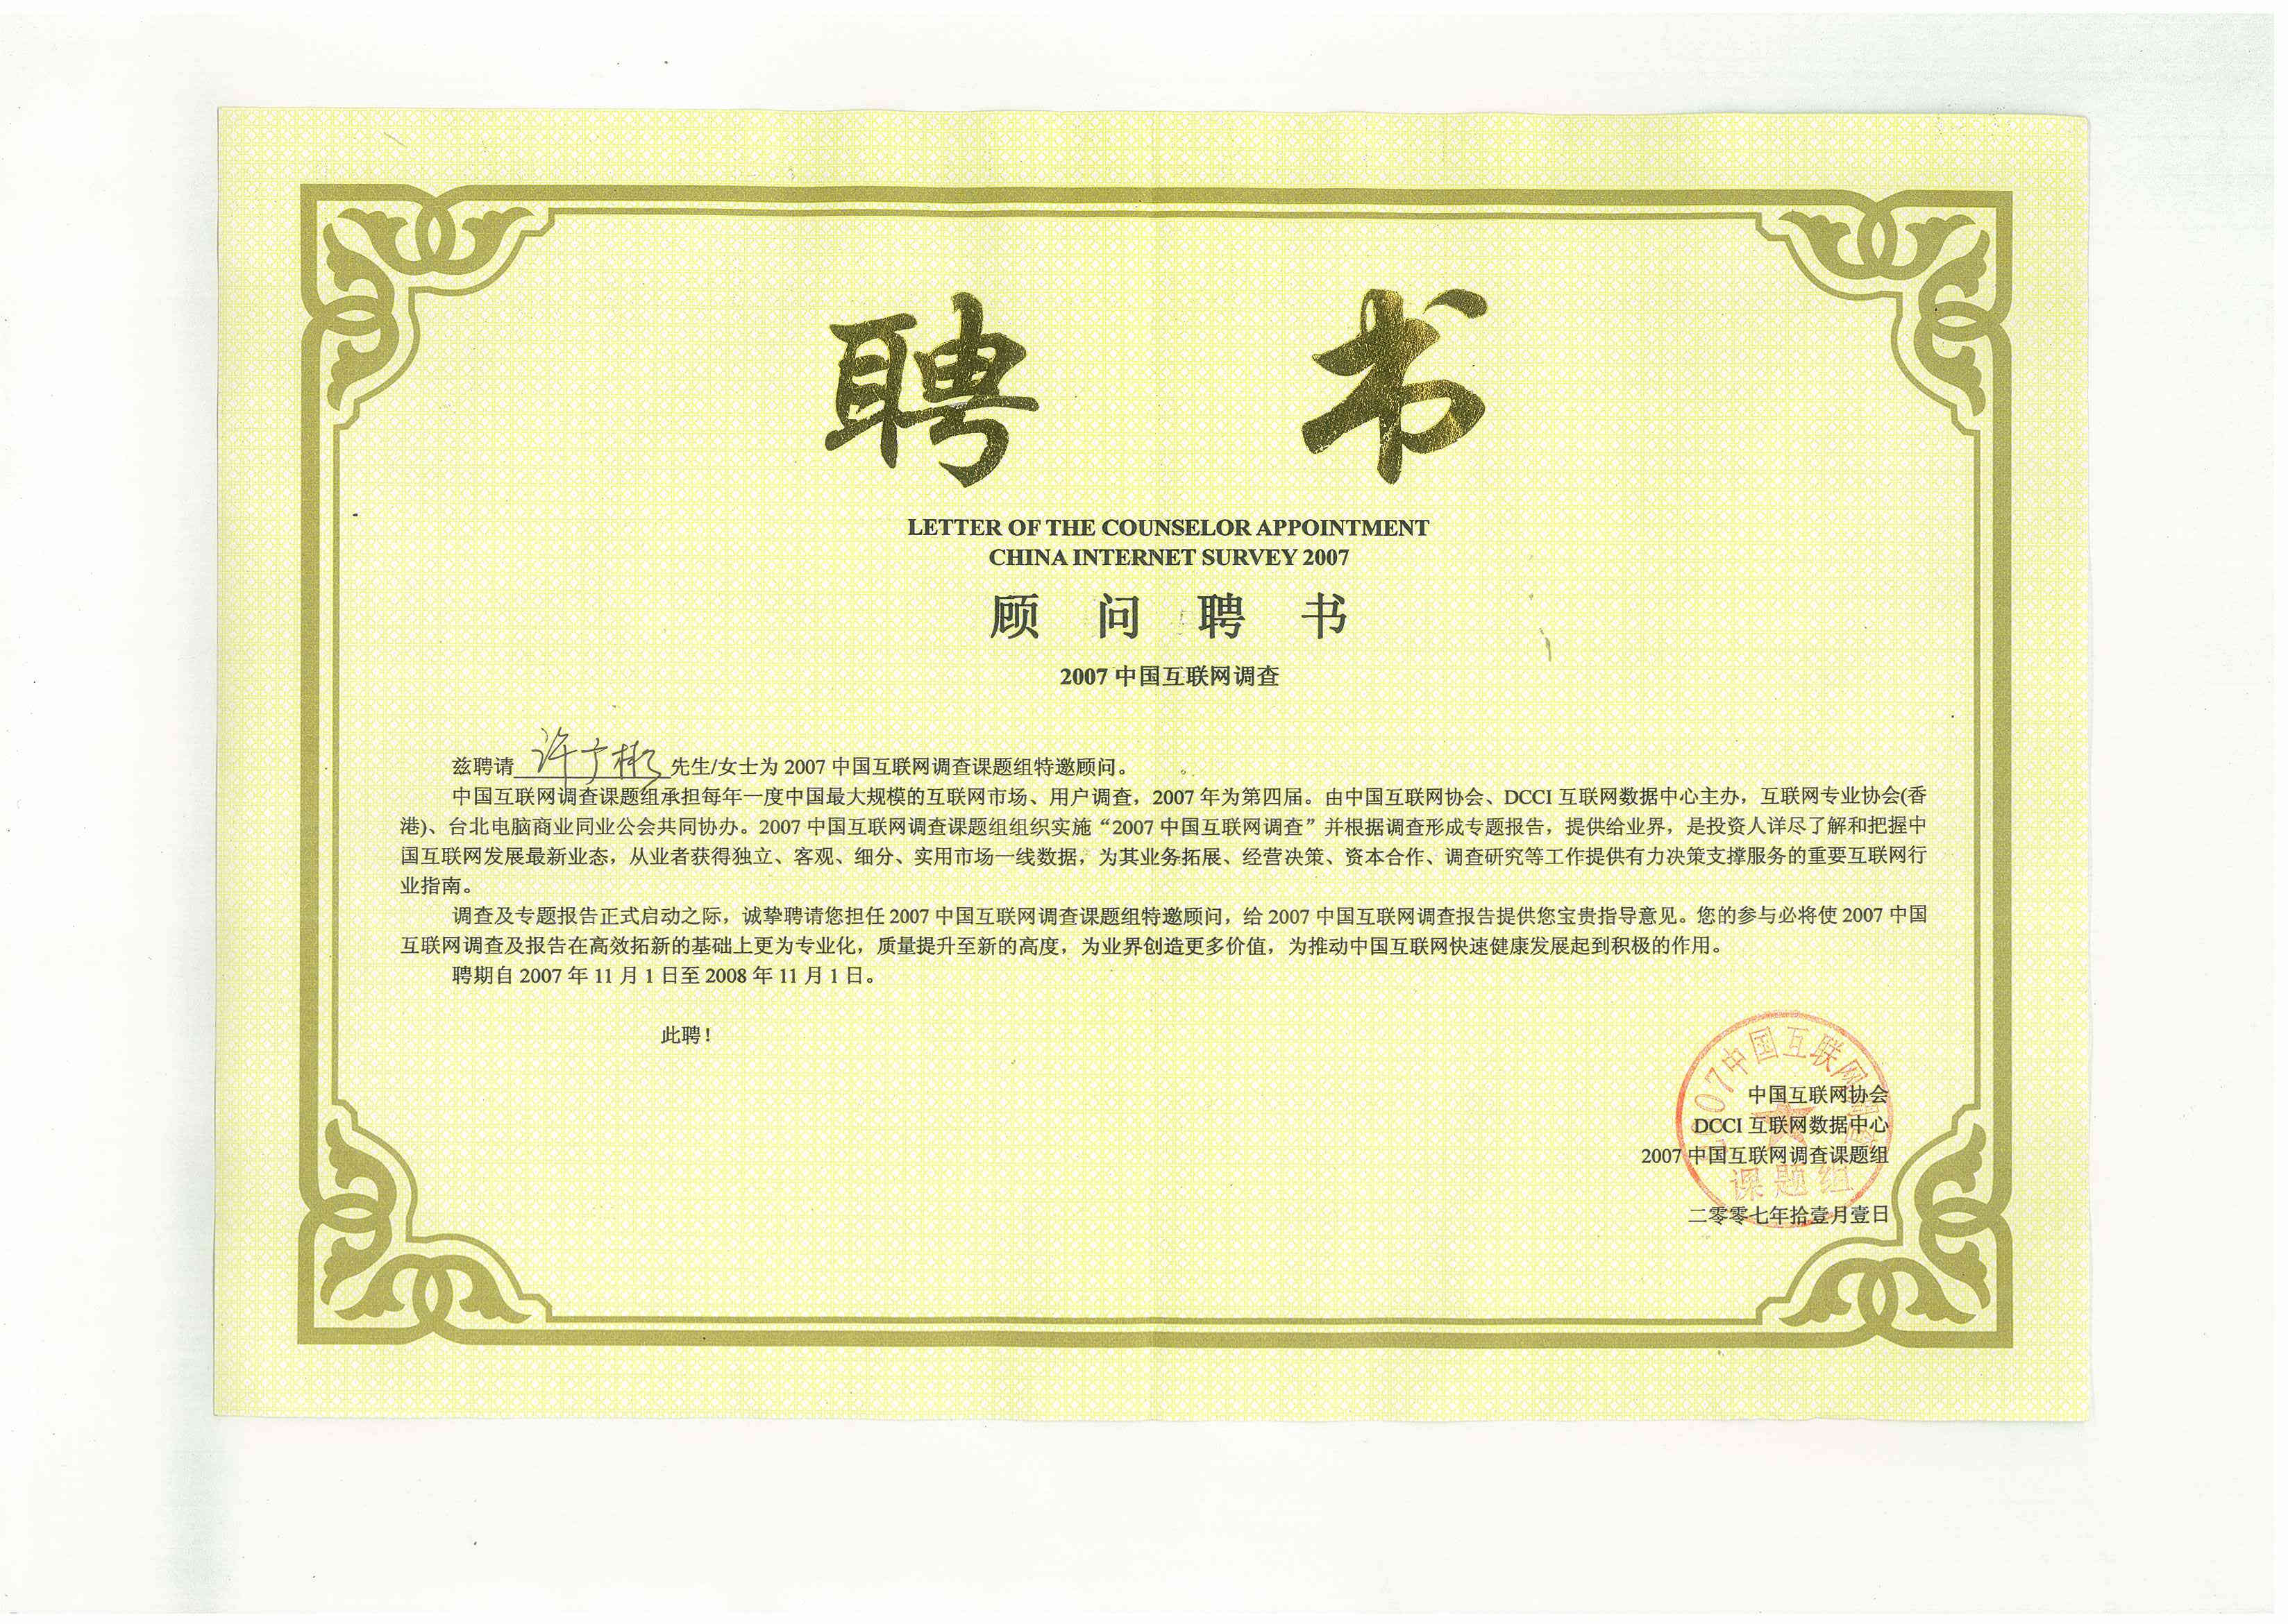 2007中国互联网调查课题组特邀顾问聘书